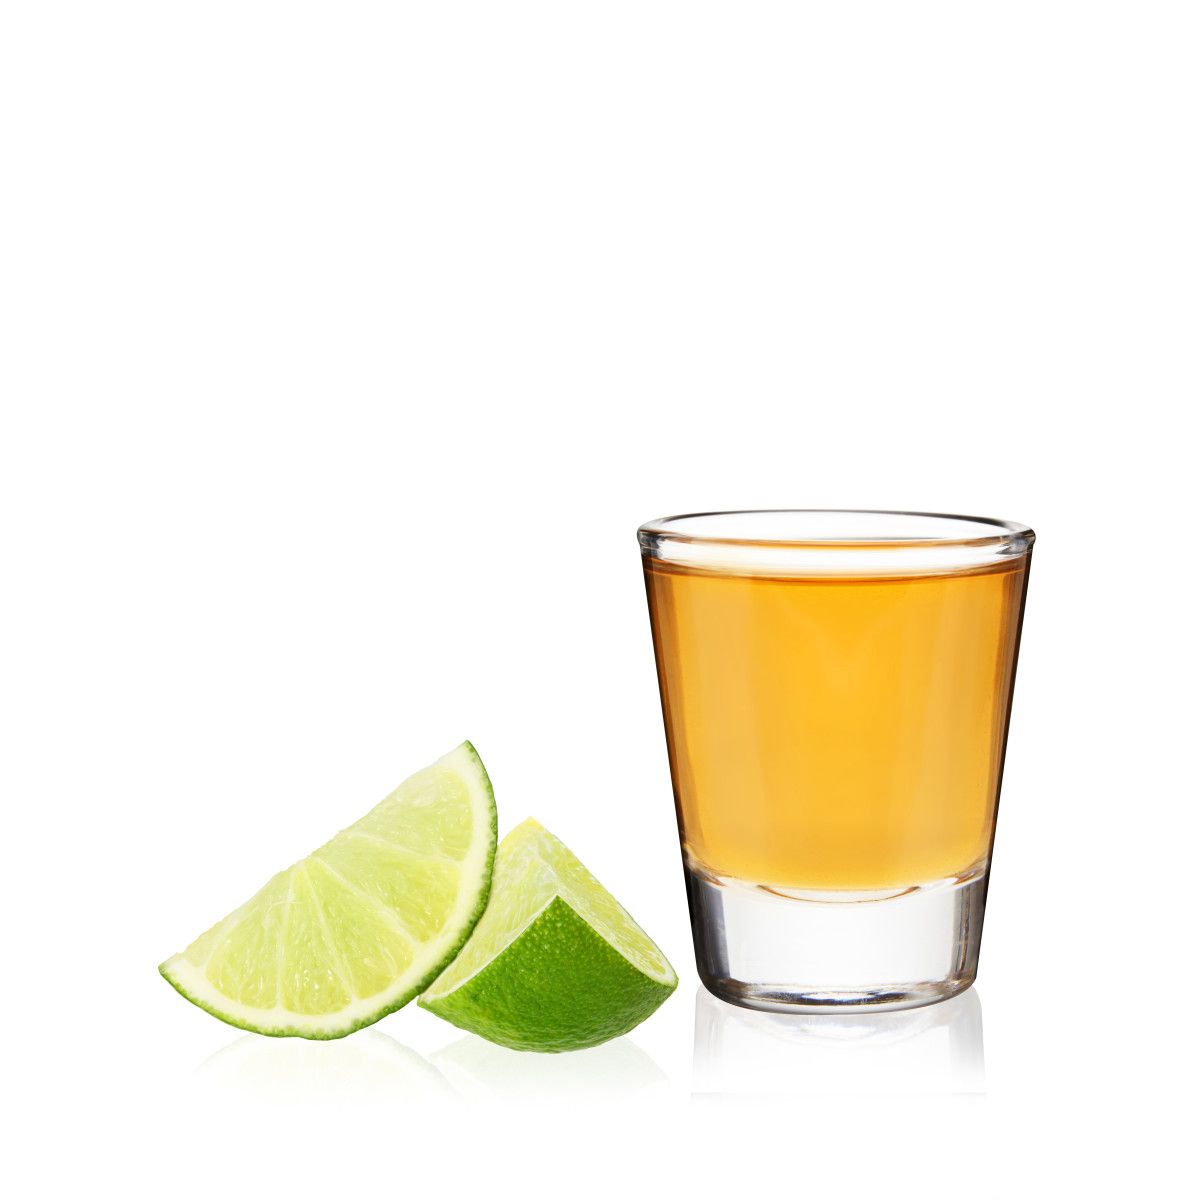 Shot Glass Tequila Transparent 3 Oz